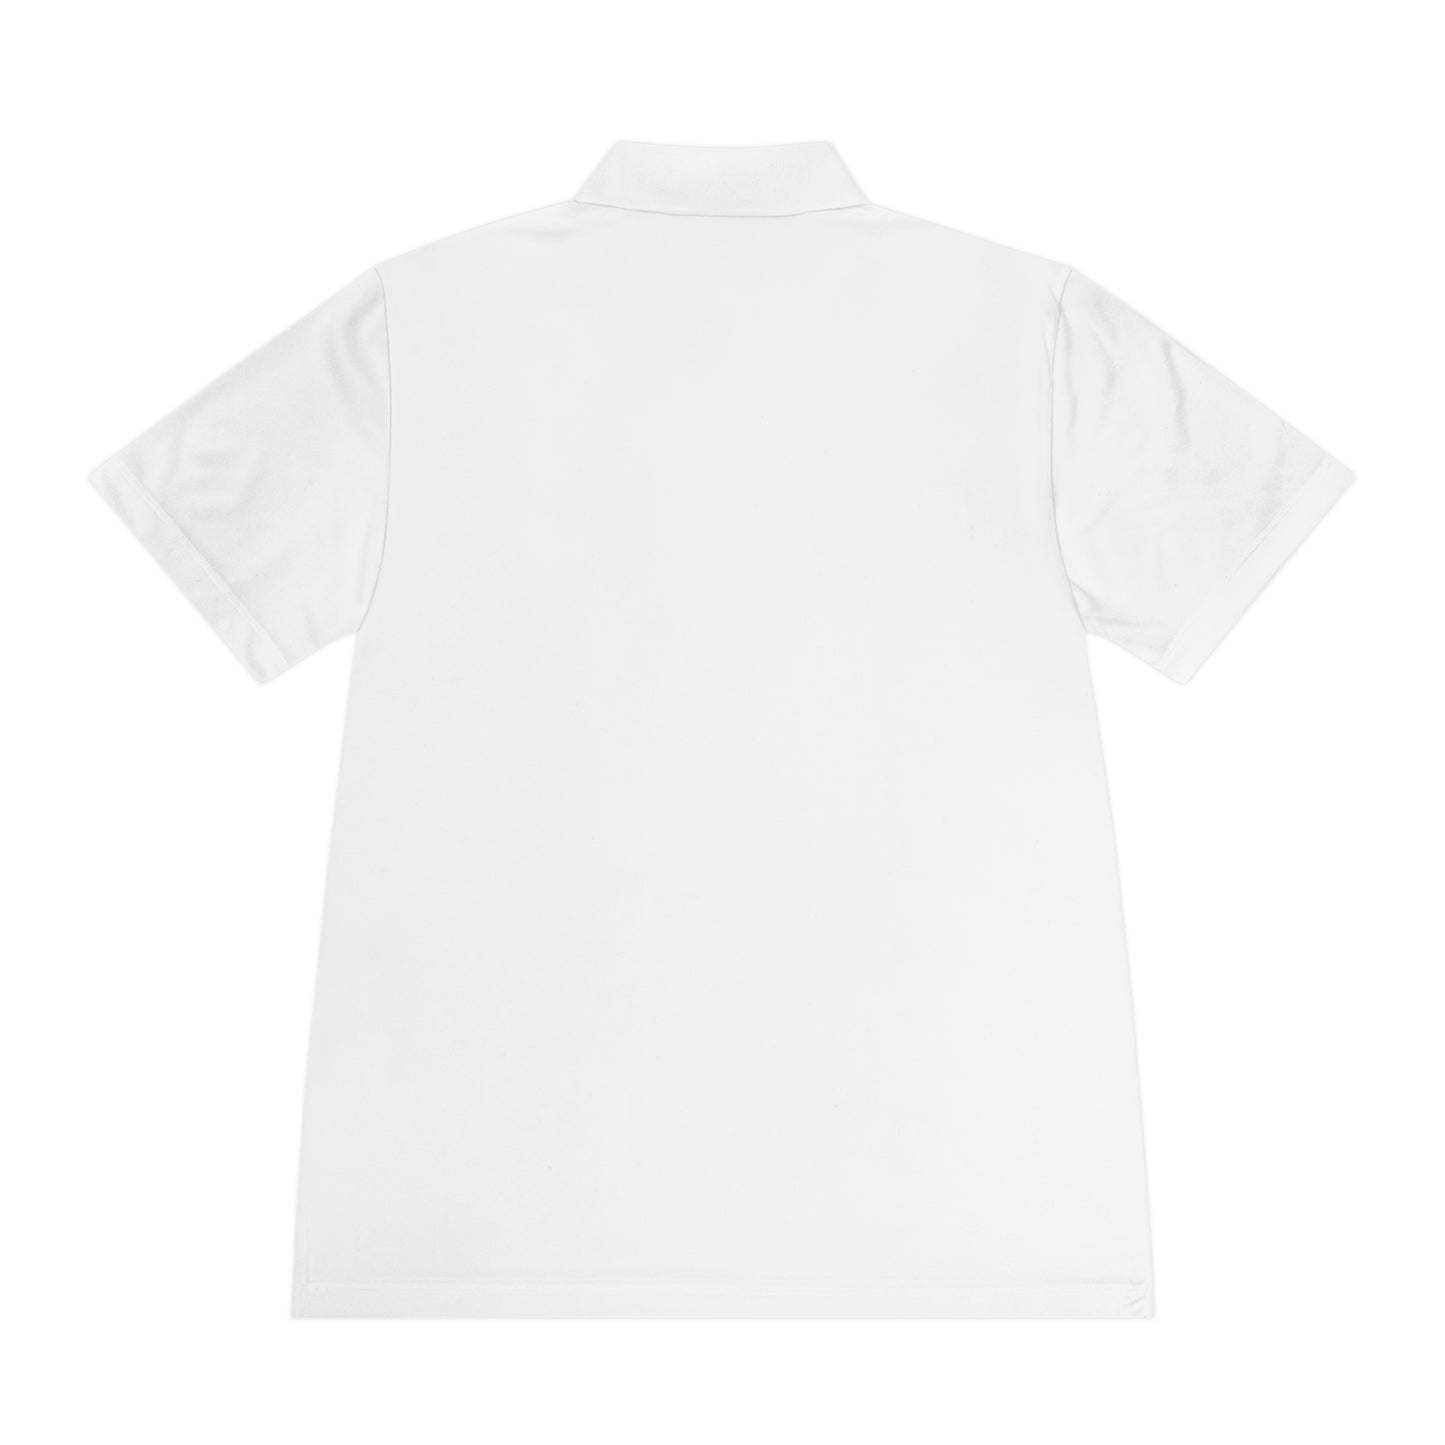 FC Southampton (70's - 80's logo) Men's Sport Polo Shirt